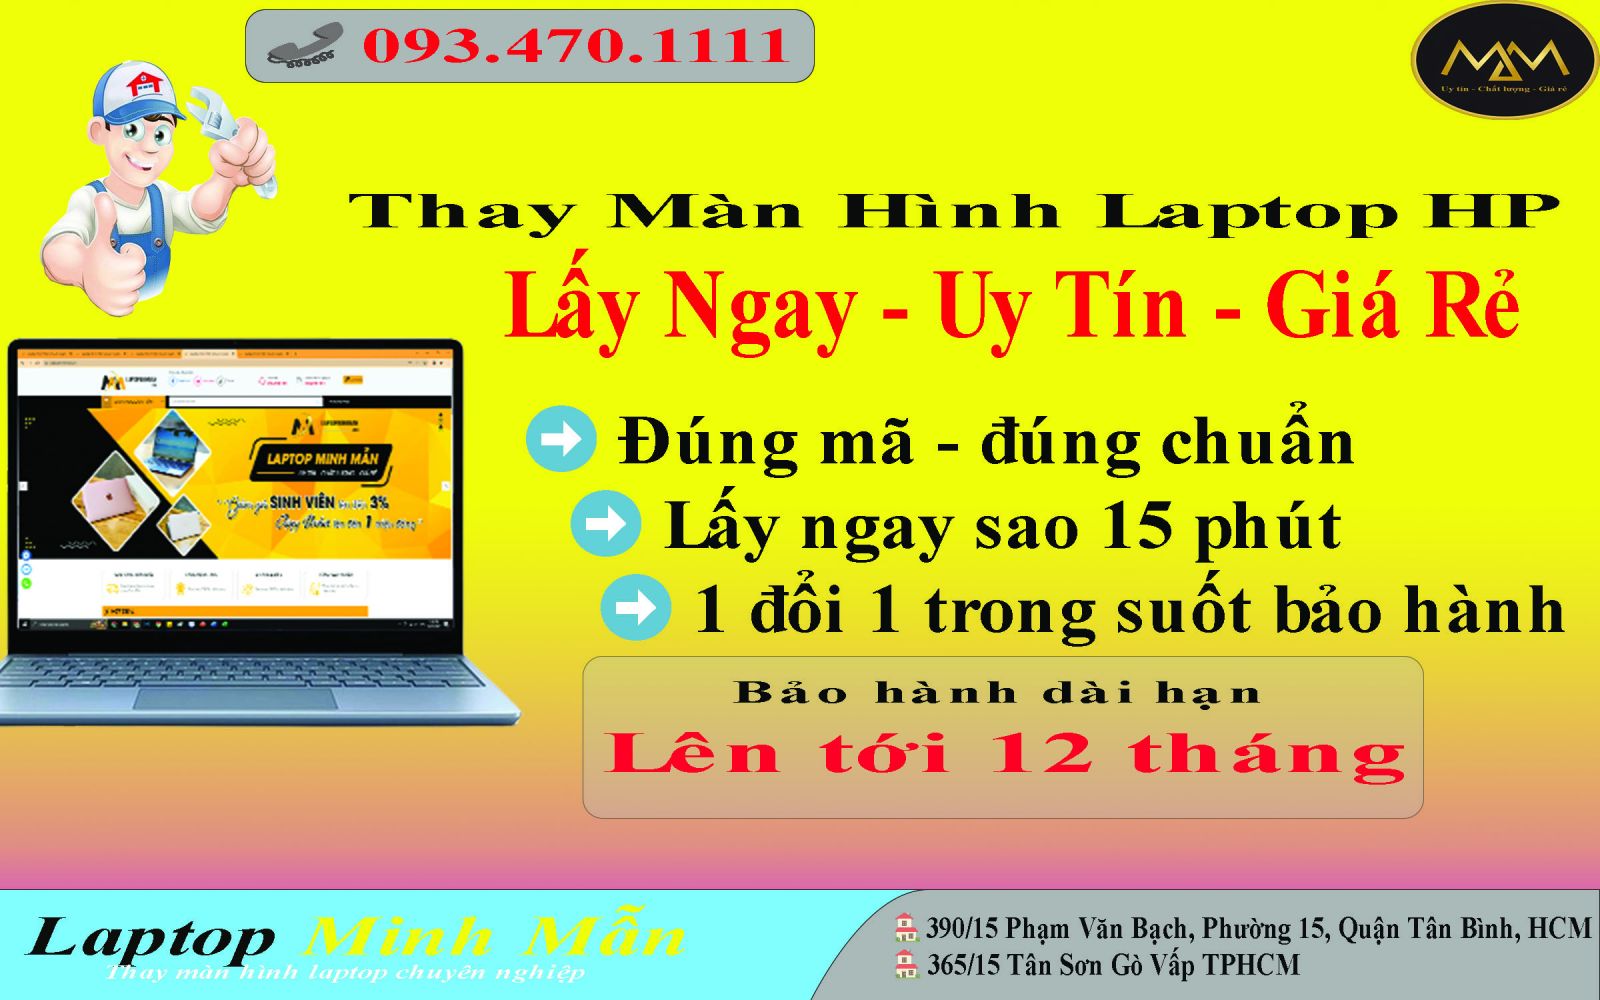 Thay màn hình laptop HP giá rẻ Tân Phú